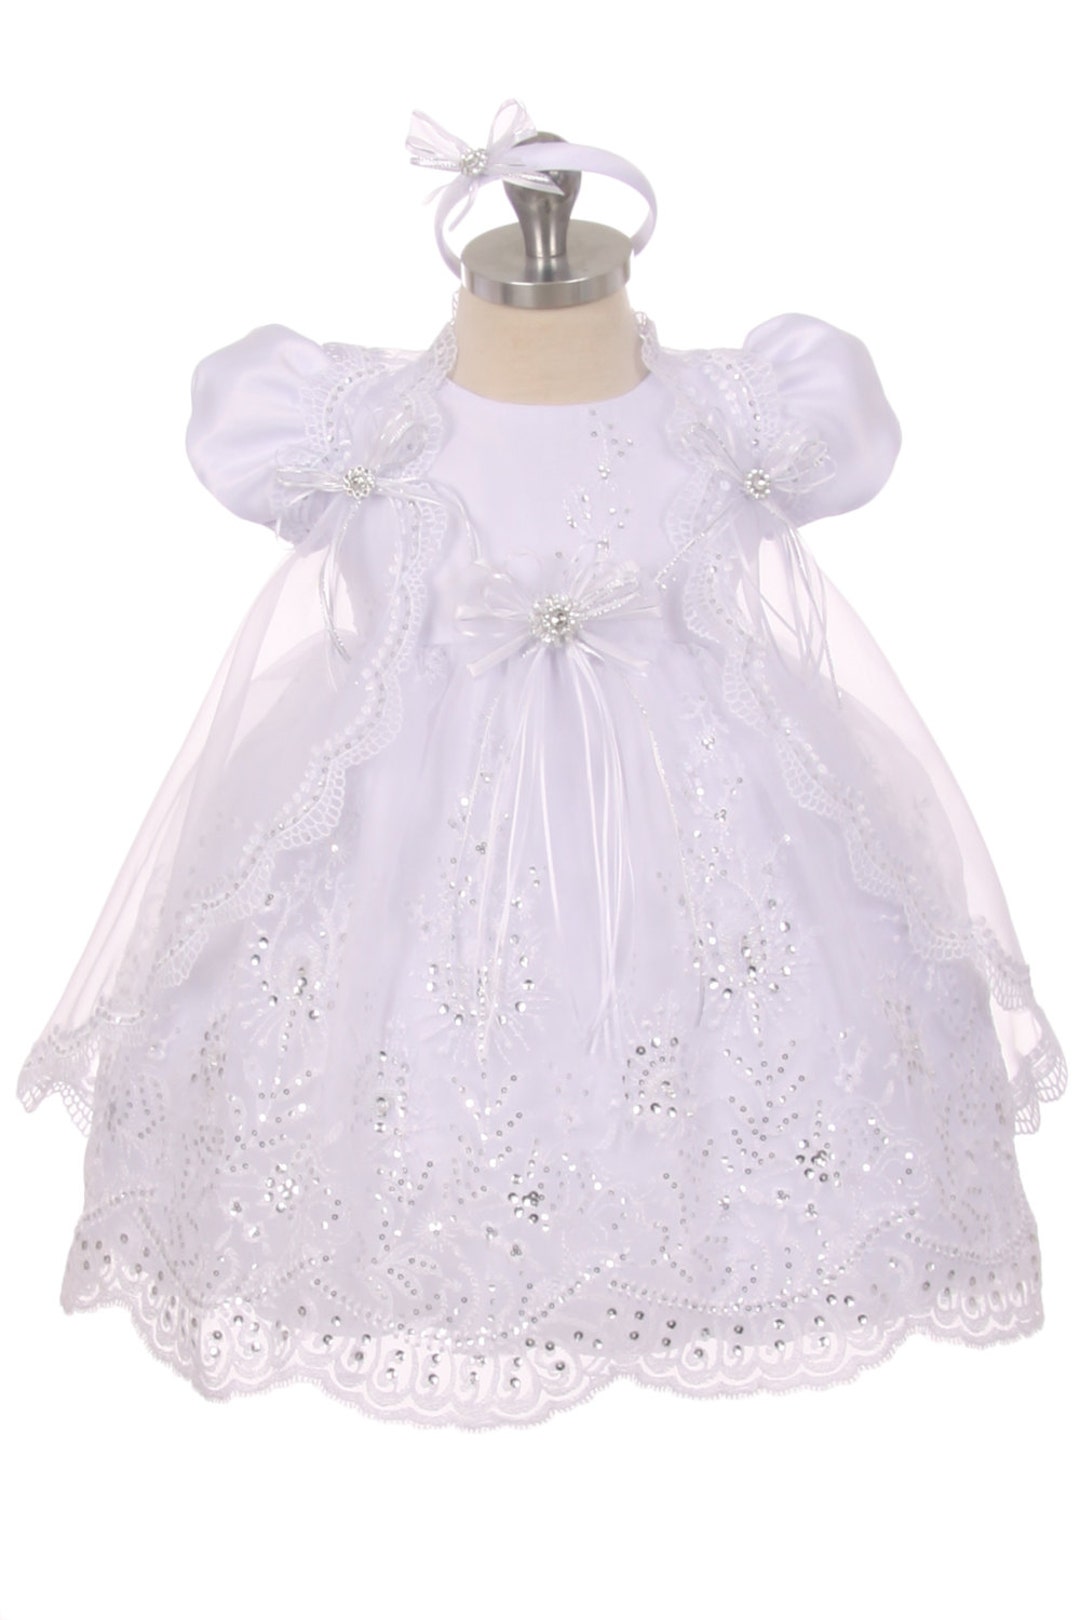 White Infant Baptism Dress Christening Dress Flower Dress - Etsy